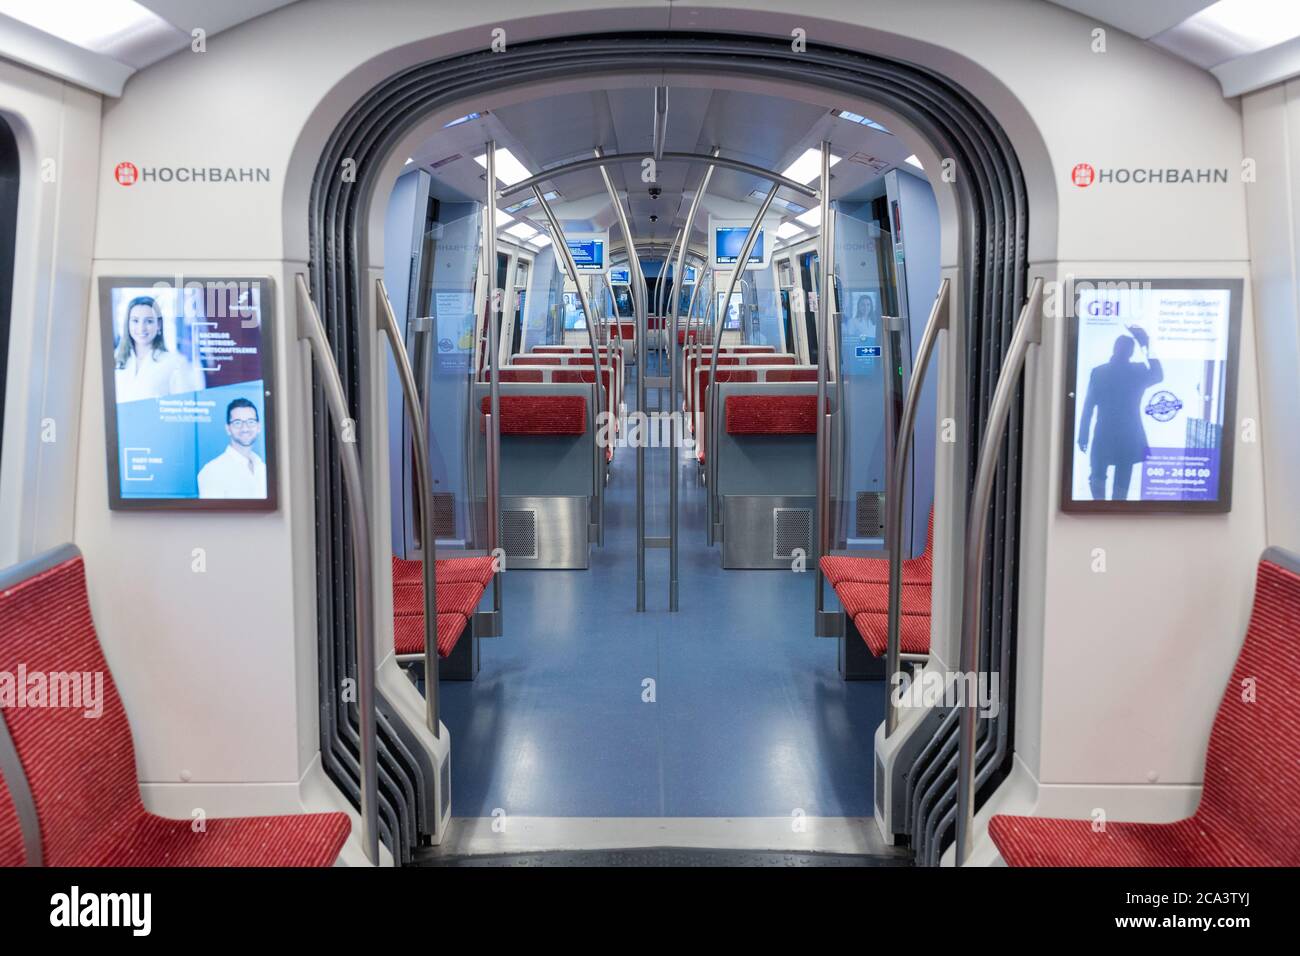 Innenansicht eines leeren U-Bahn-Wagens / U-Bahn-Zuges. Gerader Blick entlang des Hauptganges. Hamburg, Deutschland. Stockfoto